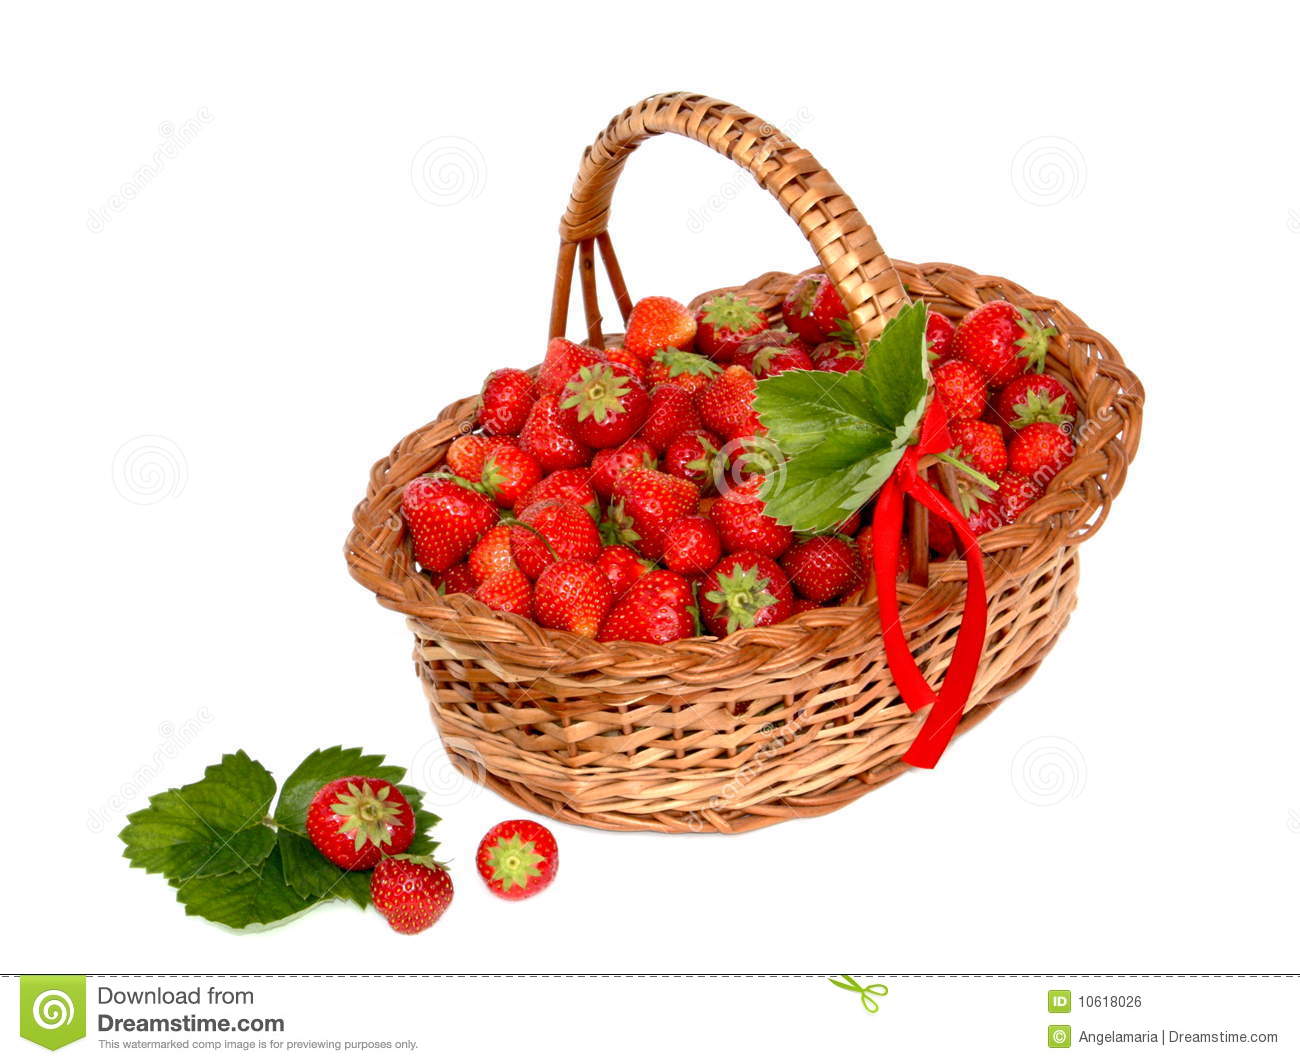 Strawberry Basket Royalty Free Stock Image   Image  10618026